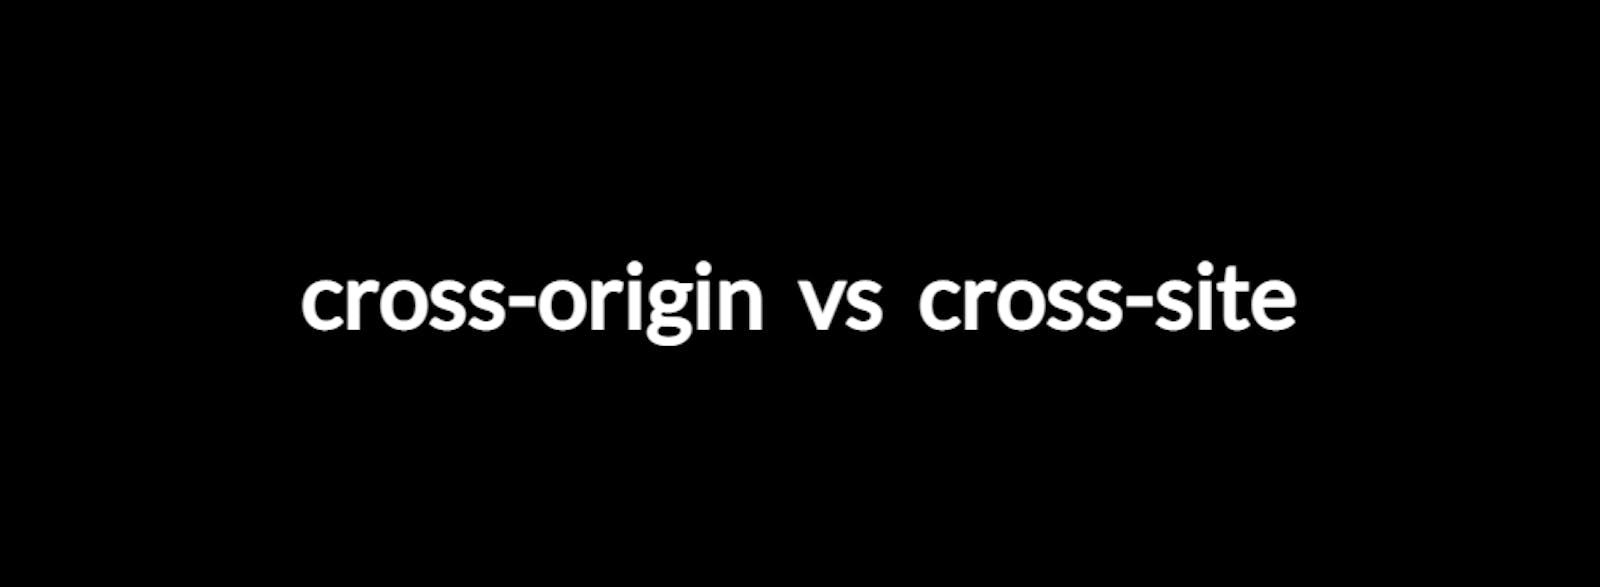 Understanding Cross-Origin and Cross-Site